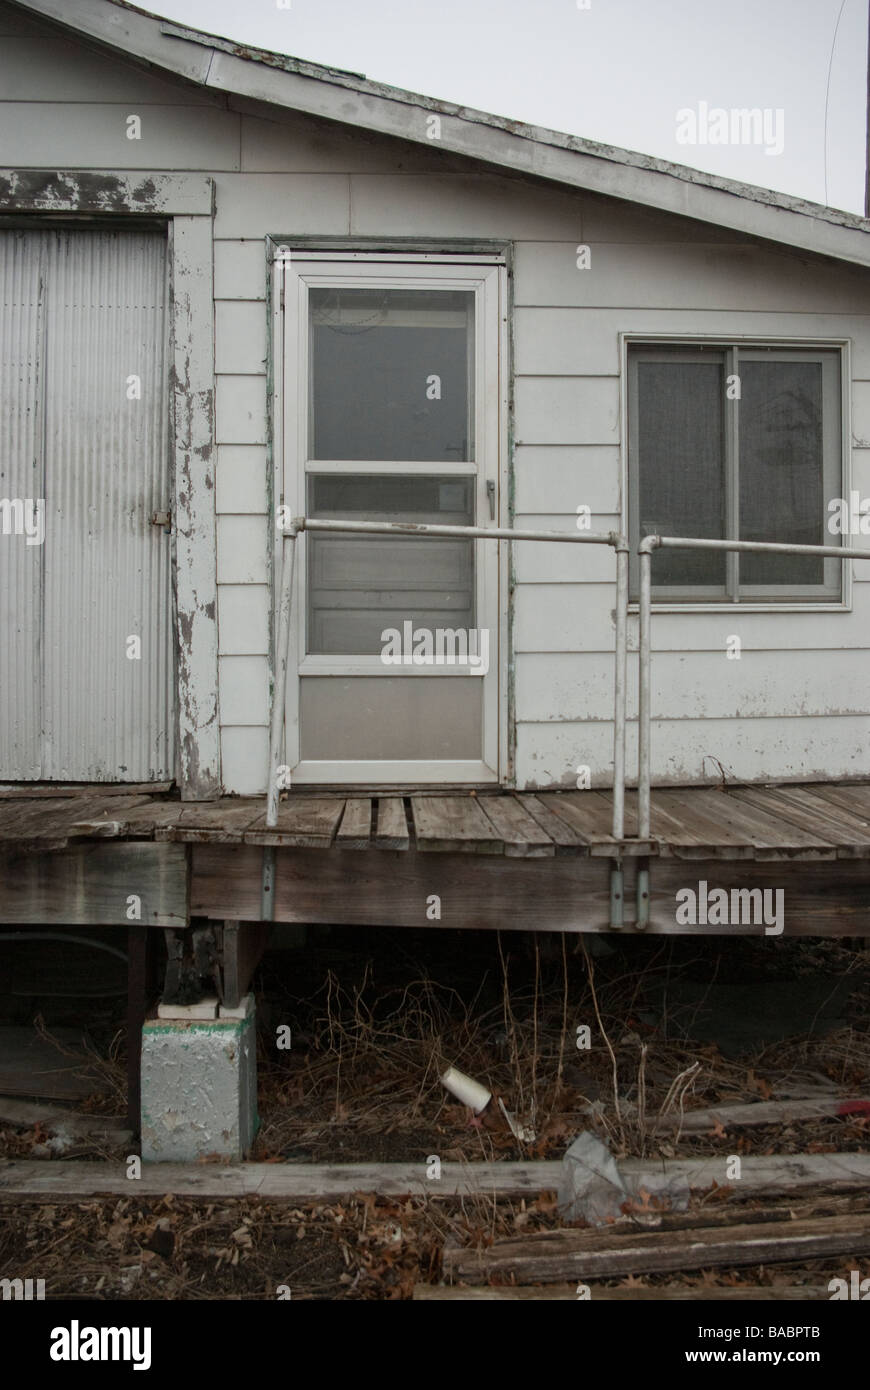 Un bâtiment abandonné est situé sur pilotis retenus par la brique Banque D'Images